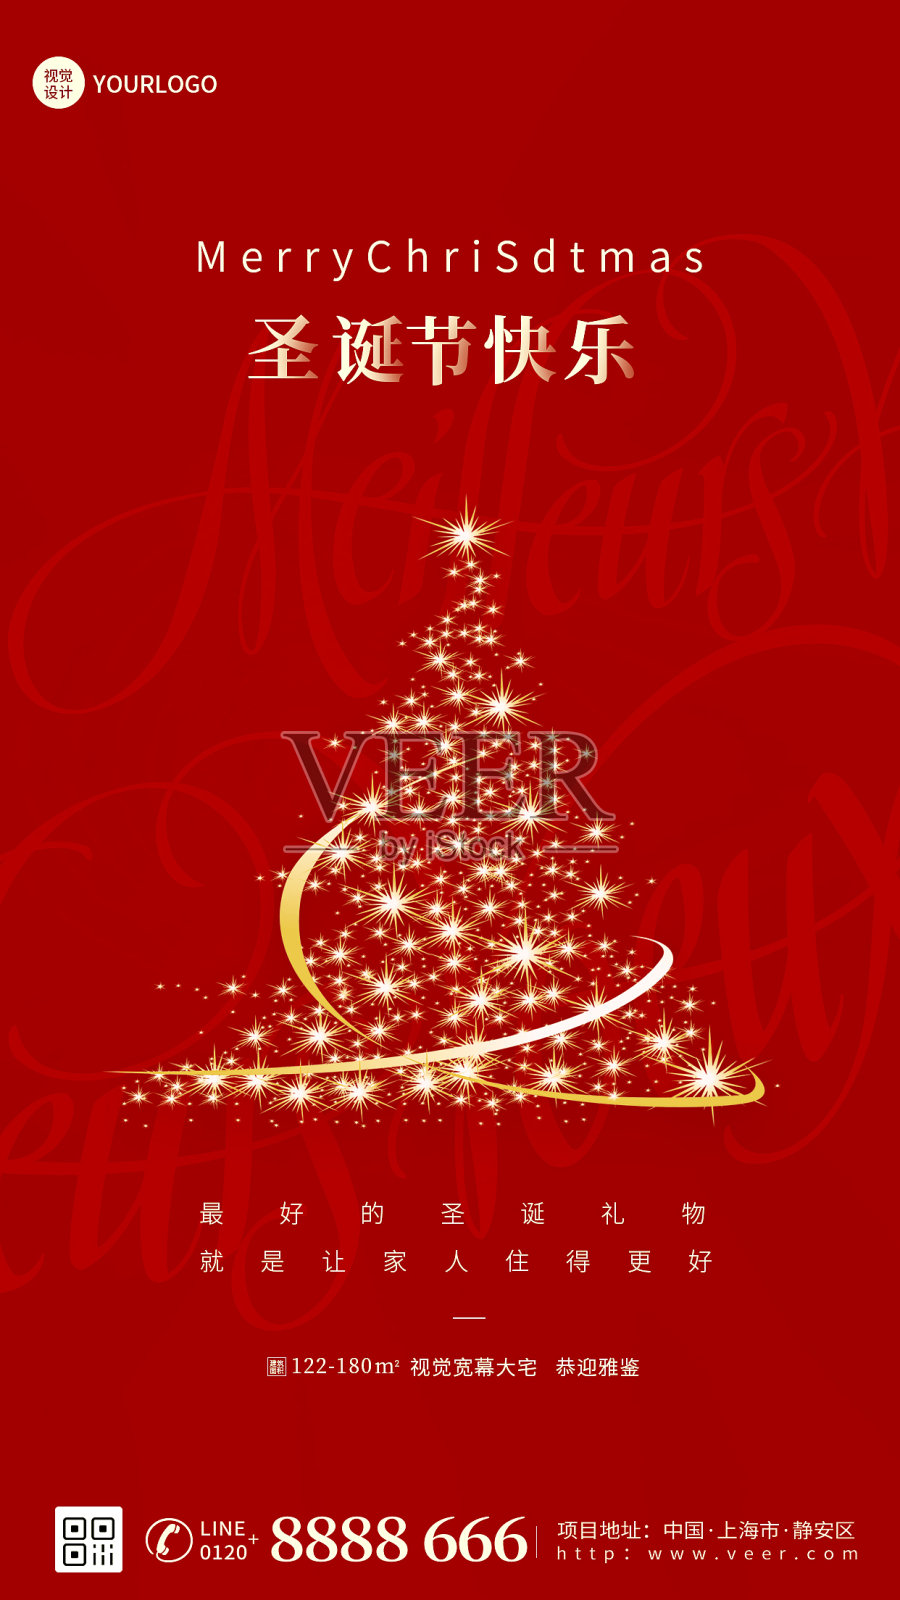 圣诞节借势促销活动红色手机海报设计模板素材